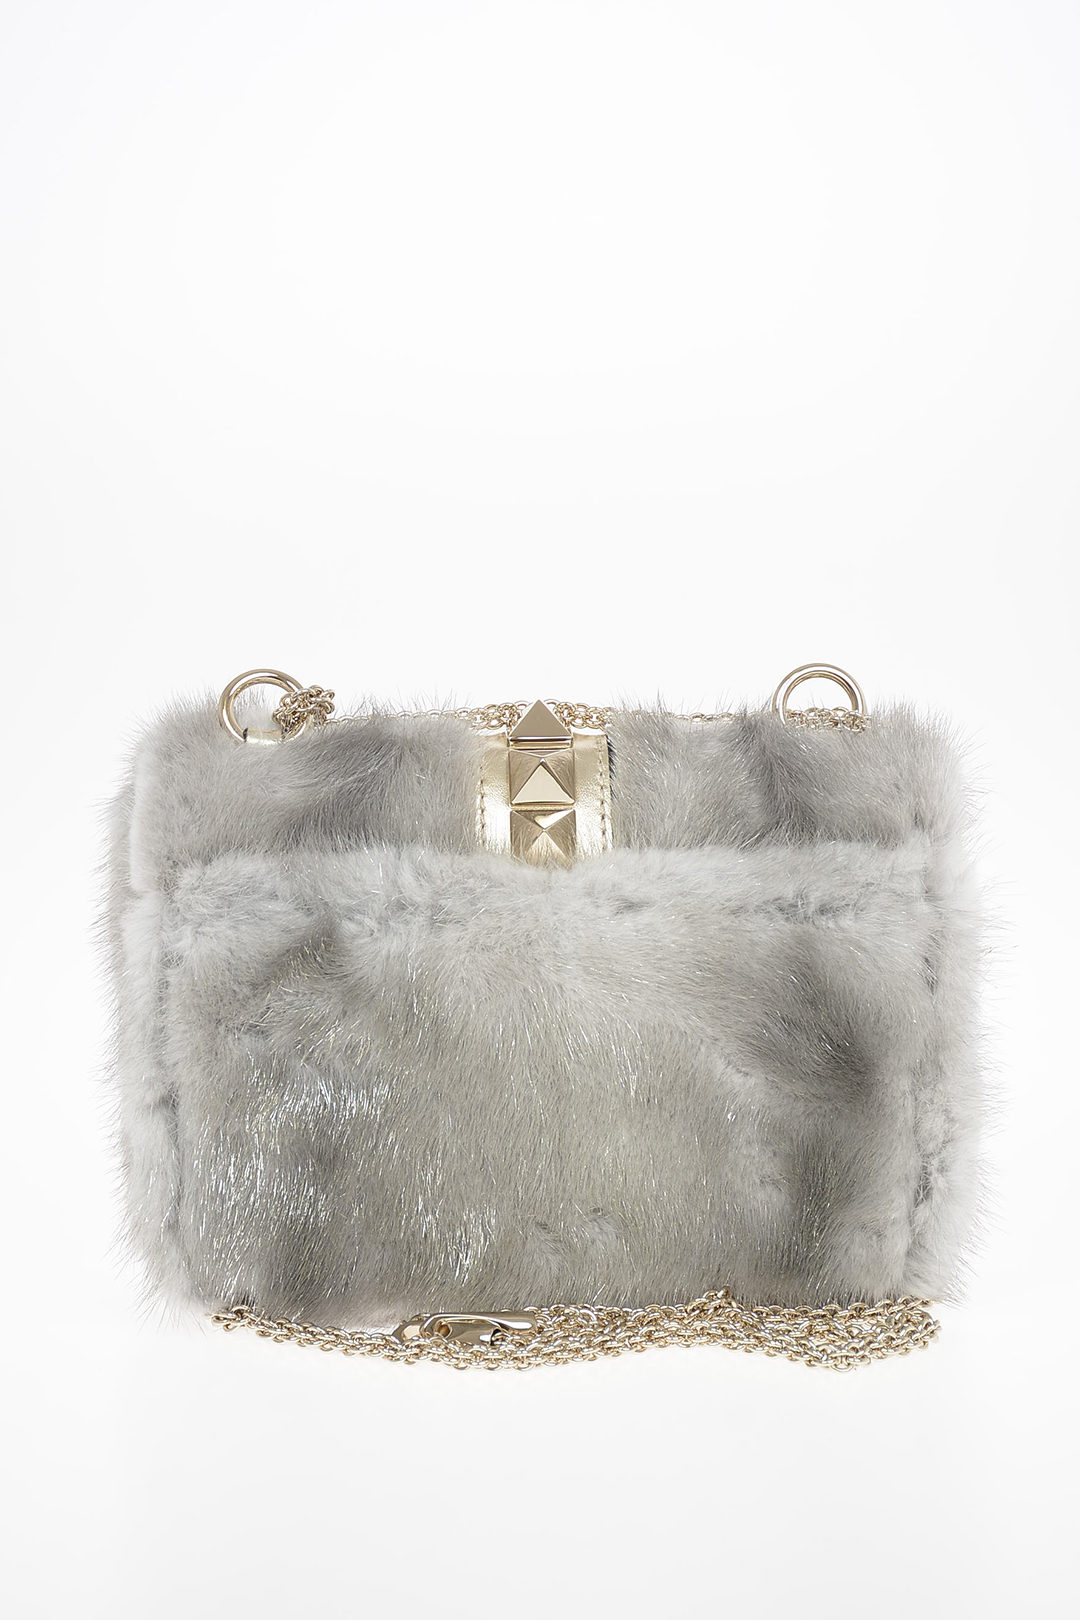 Fur bag by BILODEAU Canada | BILODEAU Canada